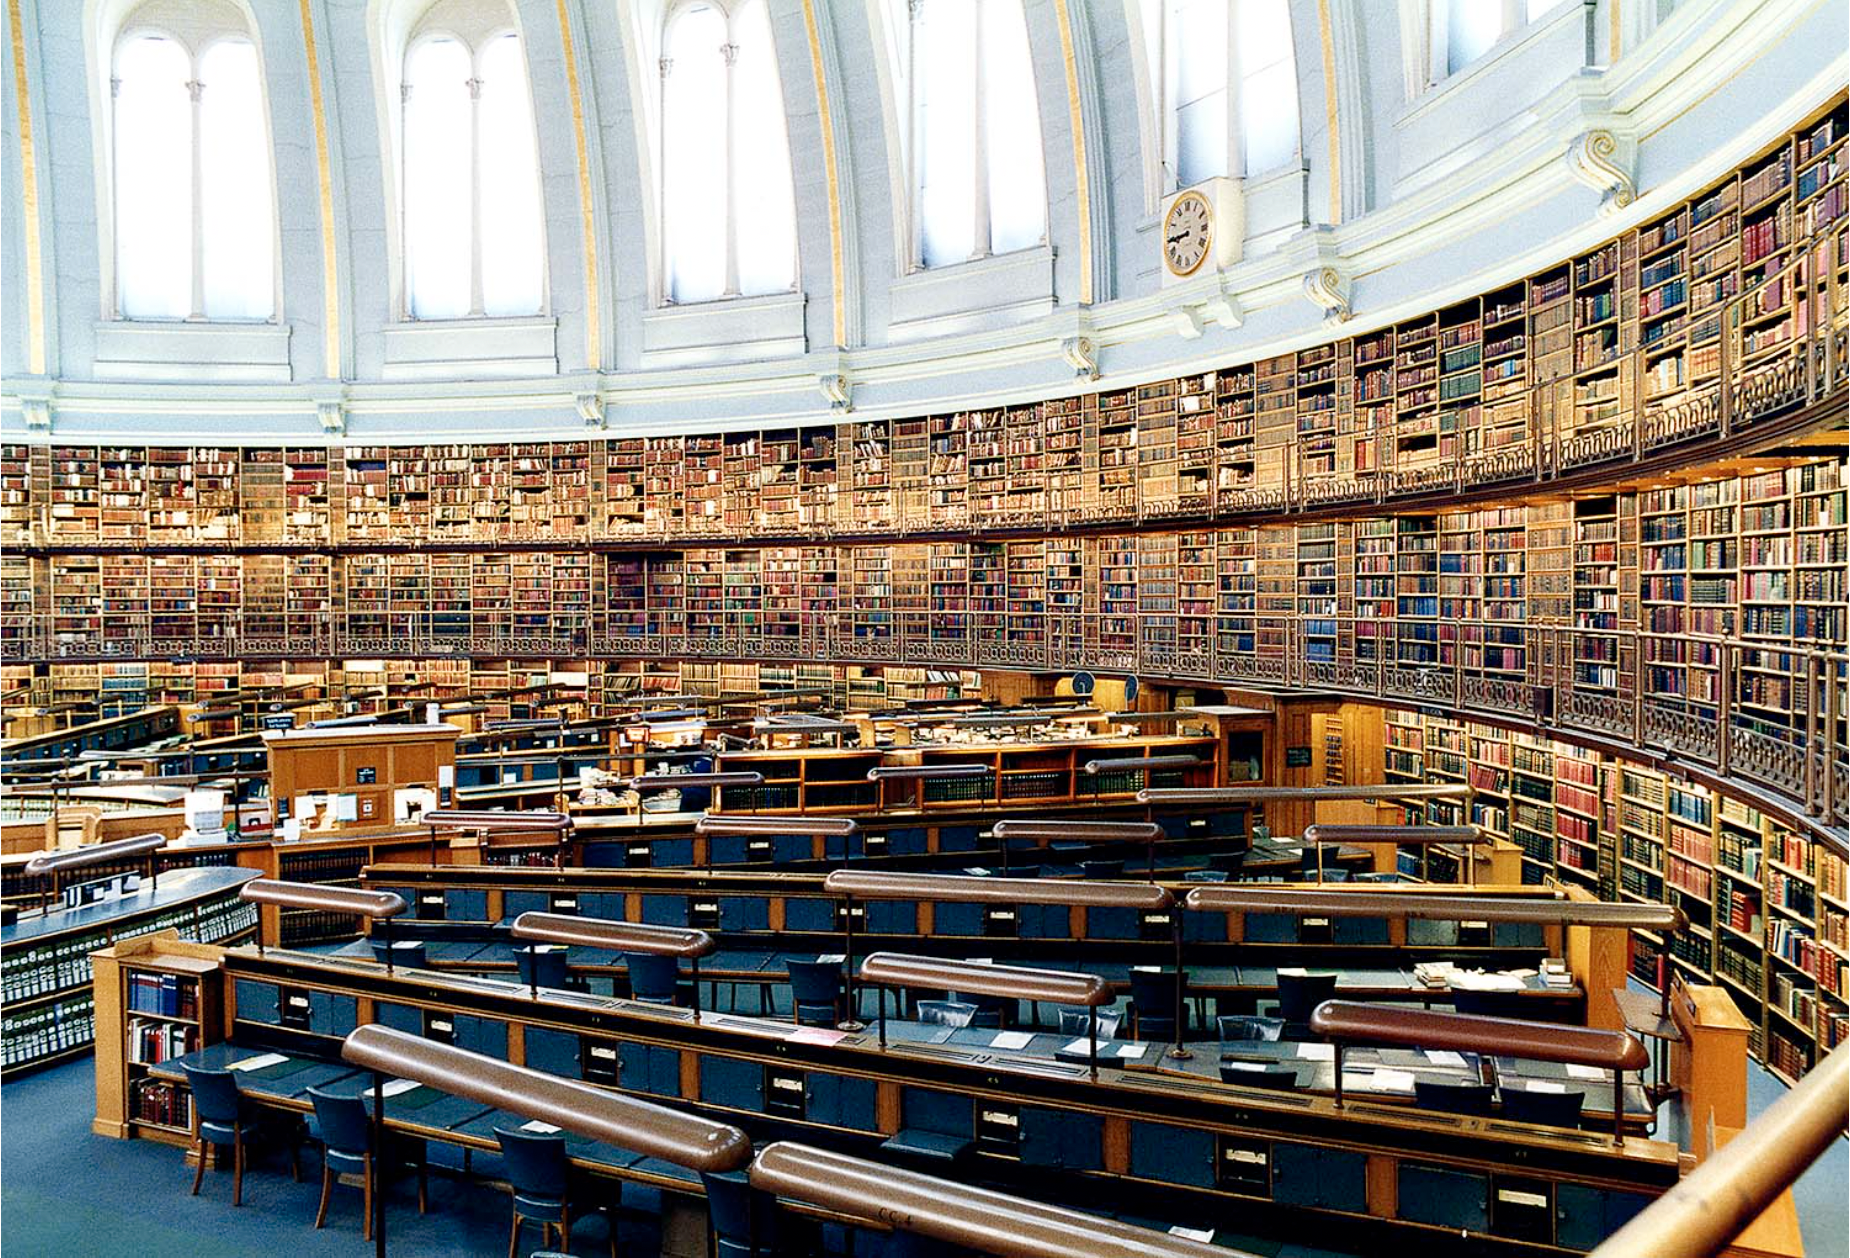 Города в которых существовали известные библиотеки. Библиотека британского музея в Лондоне. Британский музей Лондон читательный зал. Национальная библиотека Великобритании книгохранилище. Британская библиотека (British Library).